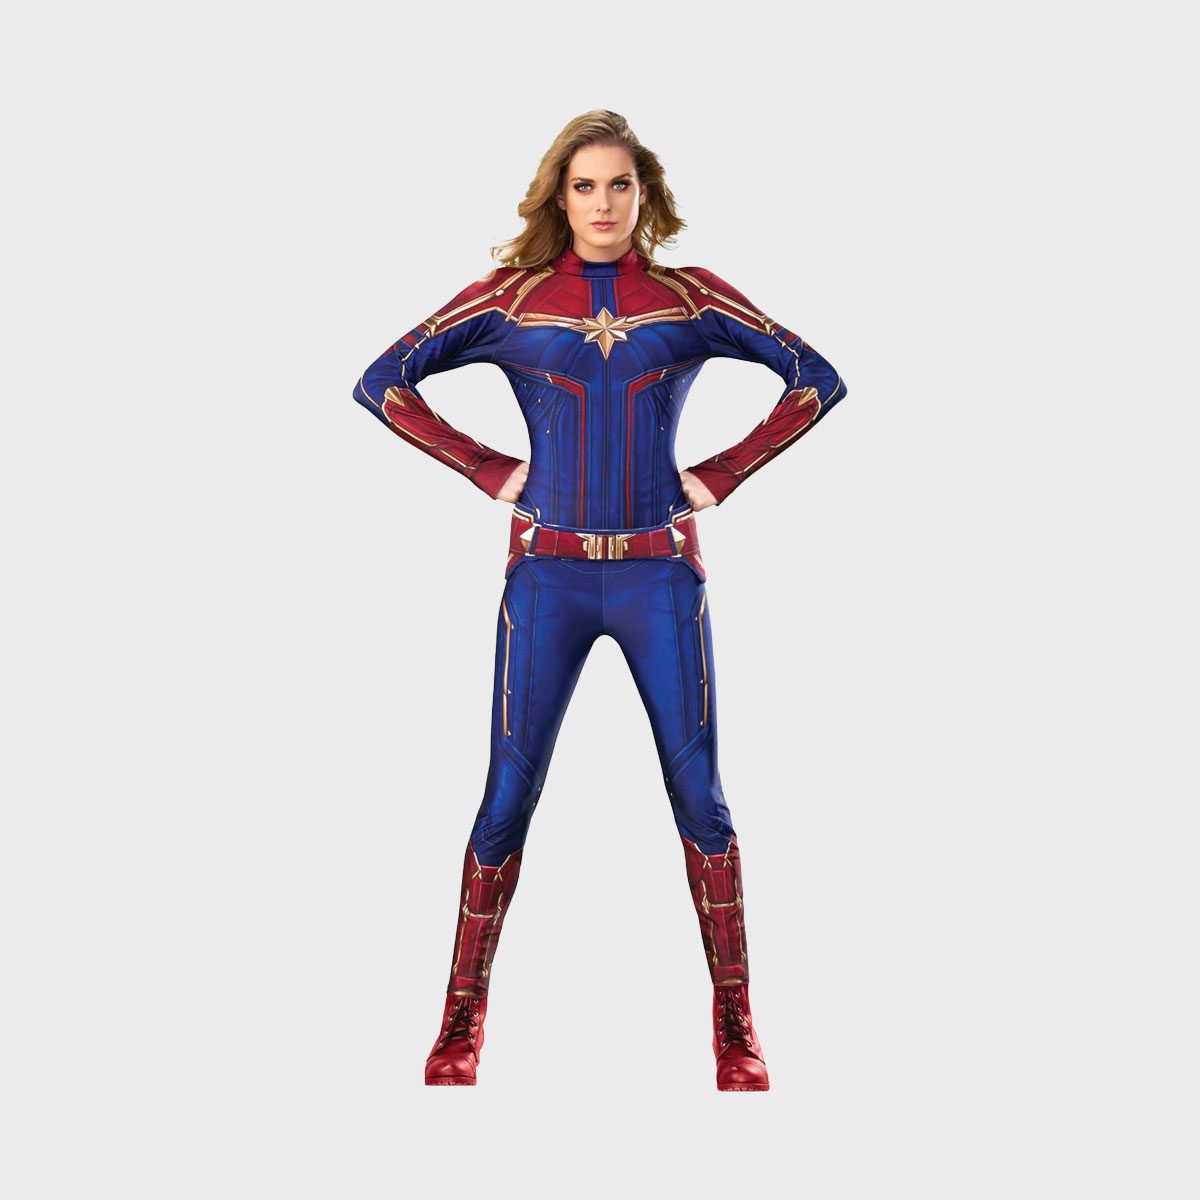 Rubie's Women's Captain Marvel Hero Suit Ecomm Via Amazon.com